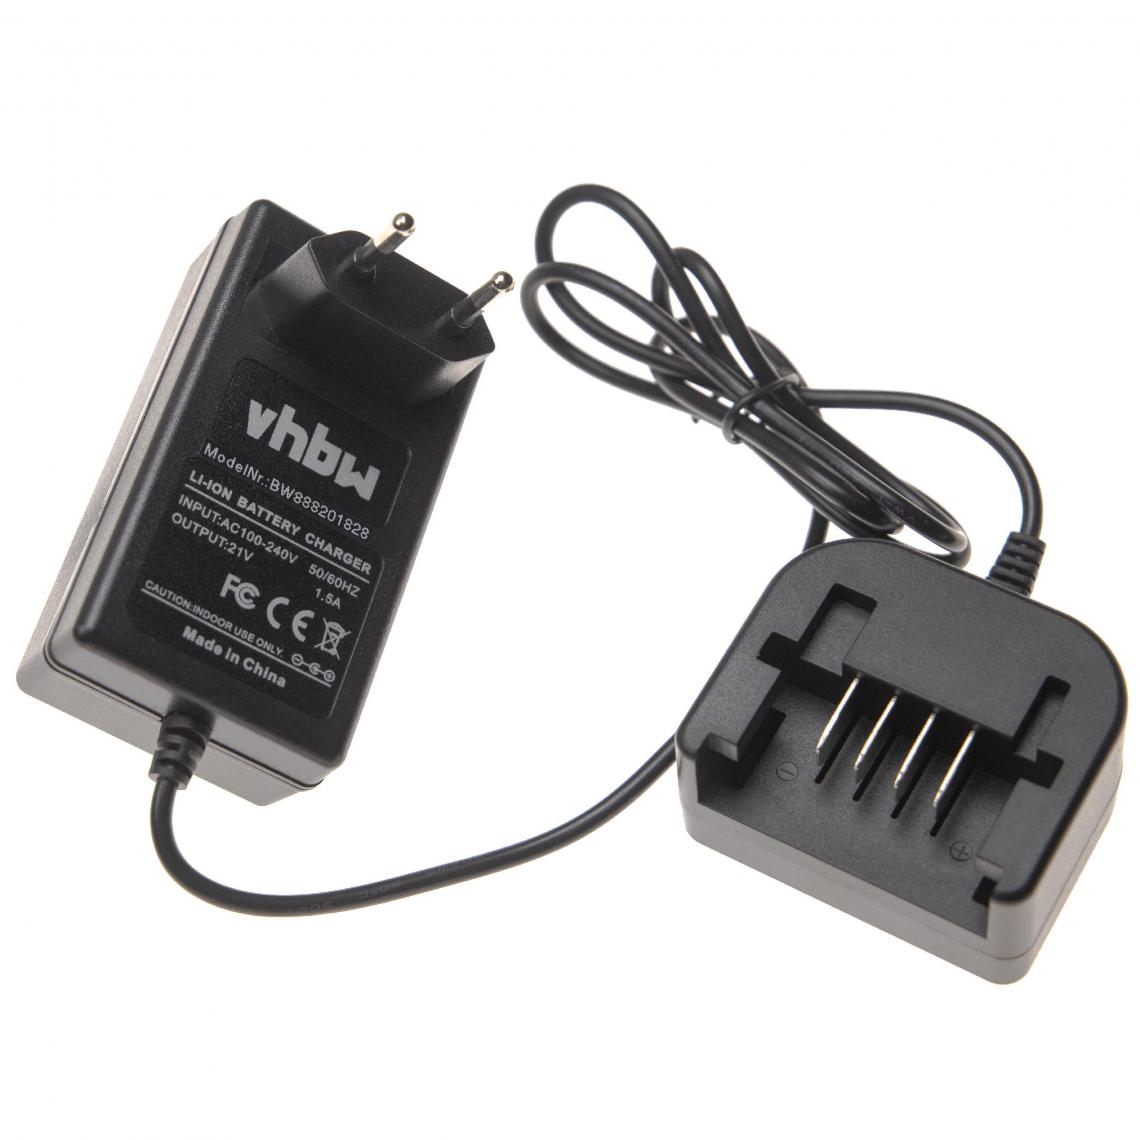 Vhbw - vhbw Chargeur compatible avec Worx WG548E.9, WG549E, WG549E.1, WG549E.5, WG549E.9, WG549W.5, WG629.2, WG629E batteries Li-ion d'outils (20V) - Clouterie